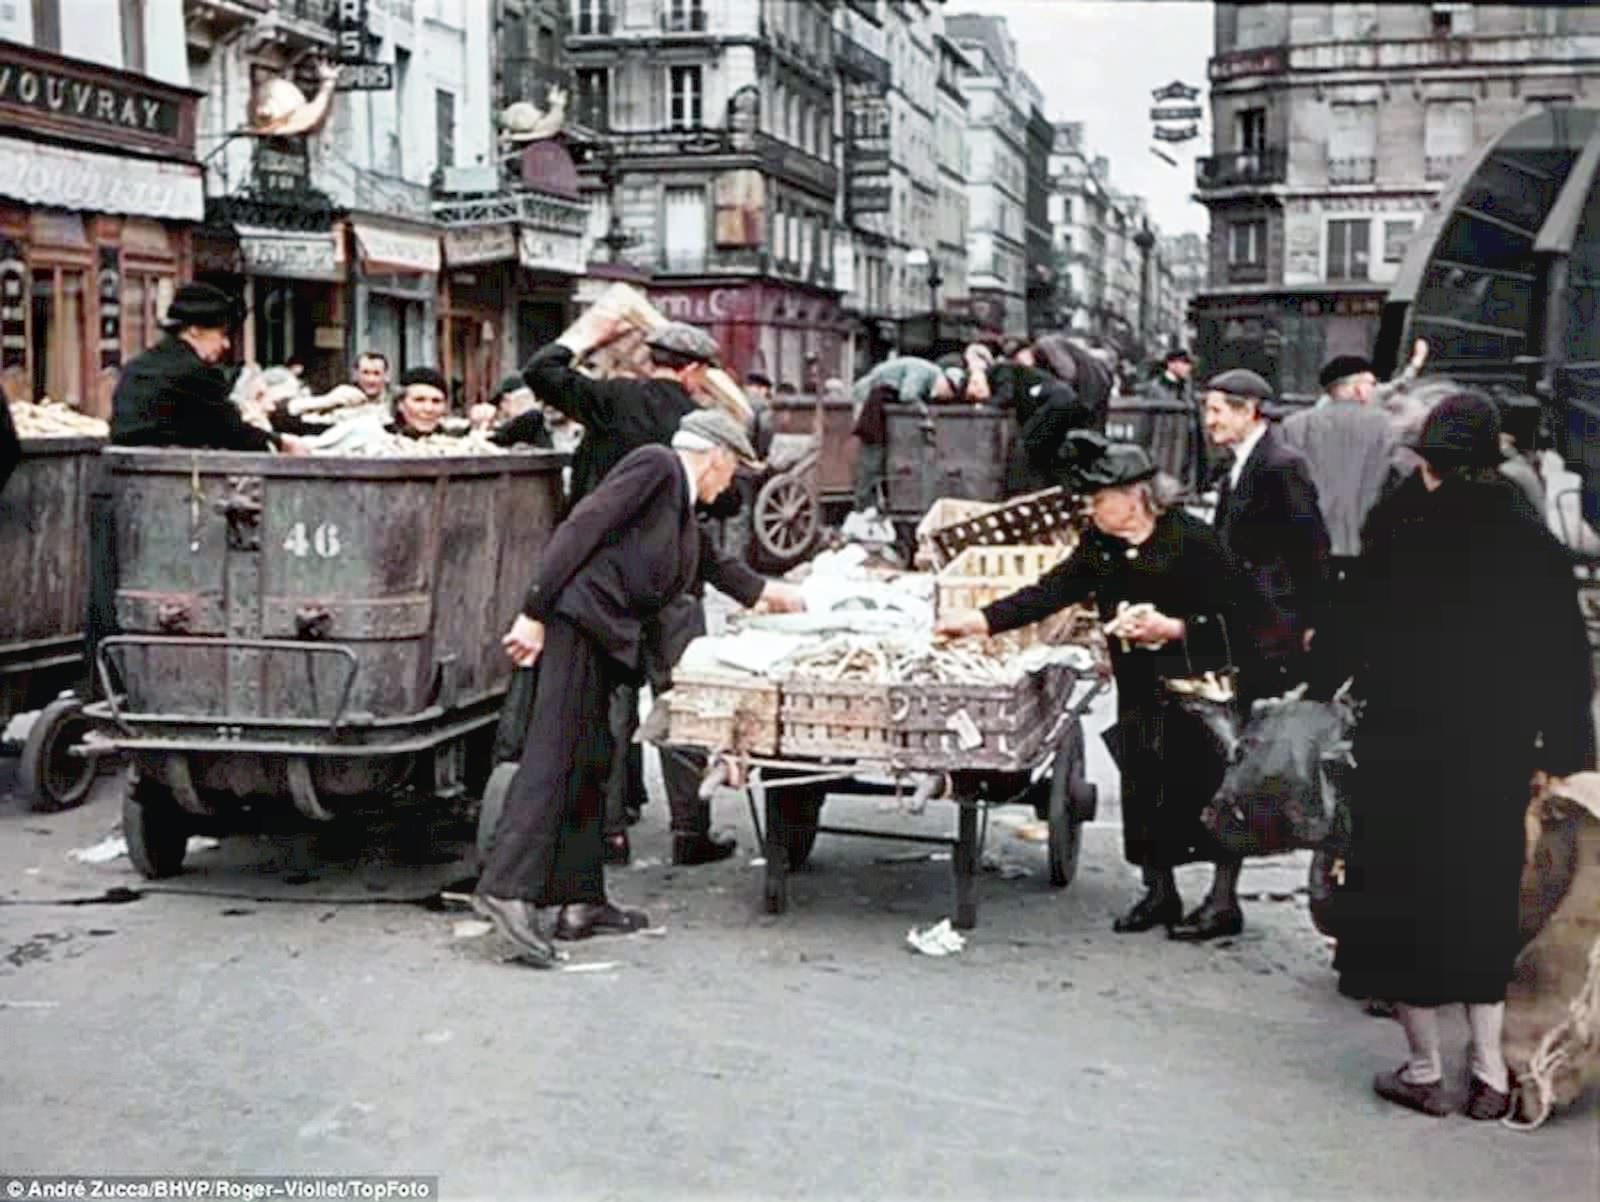 Poorer-looking Parisians at a down-at-heel street market.